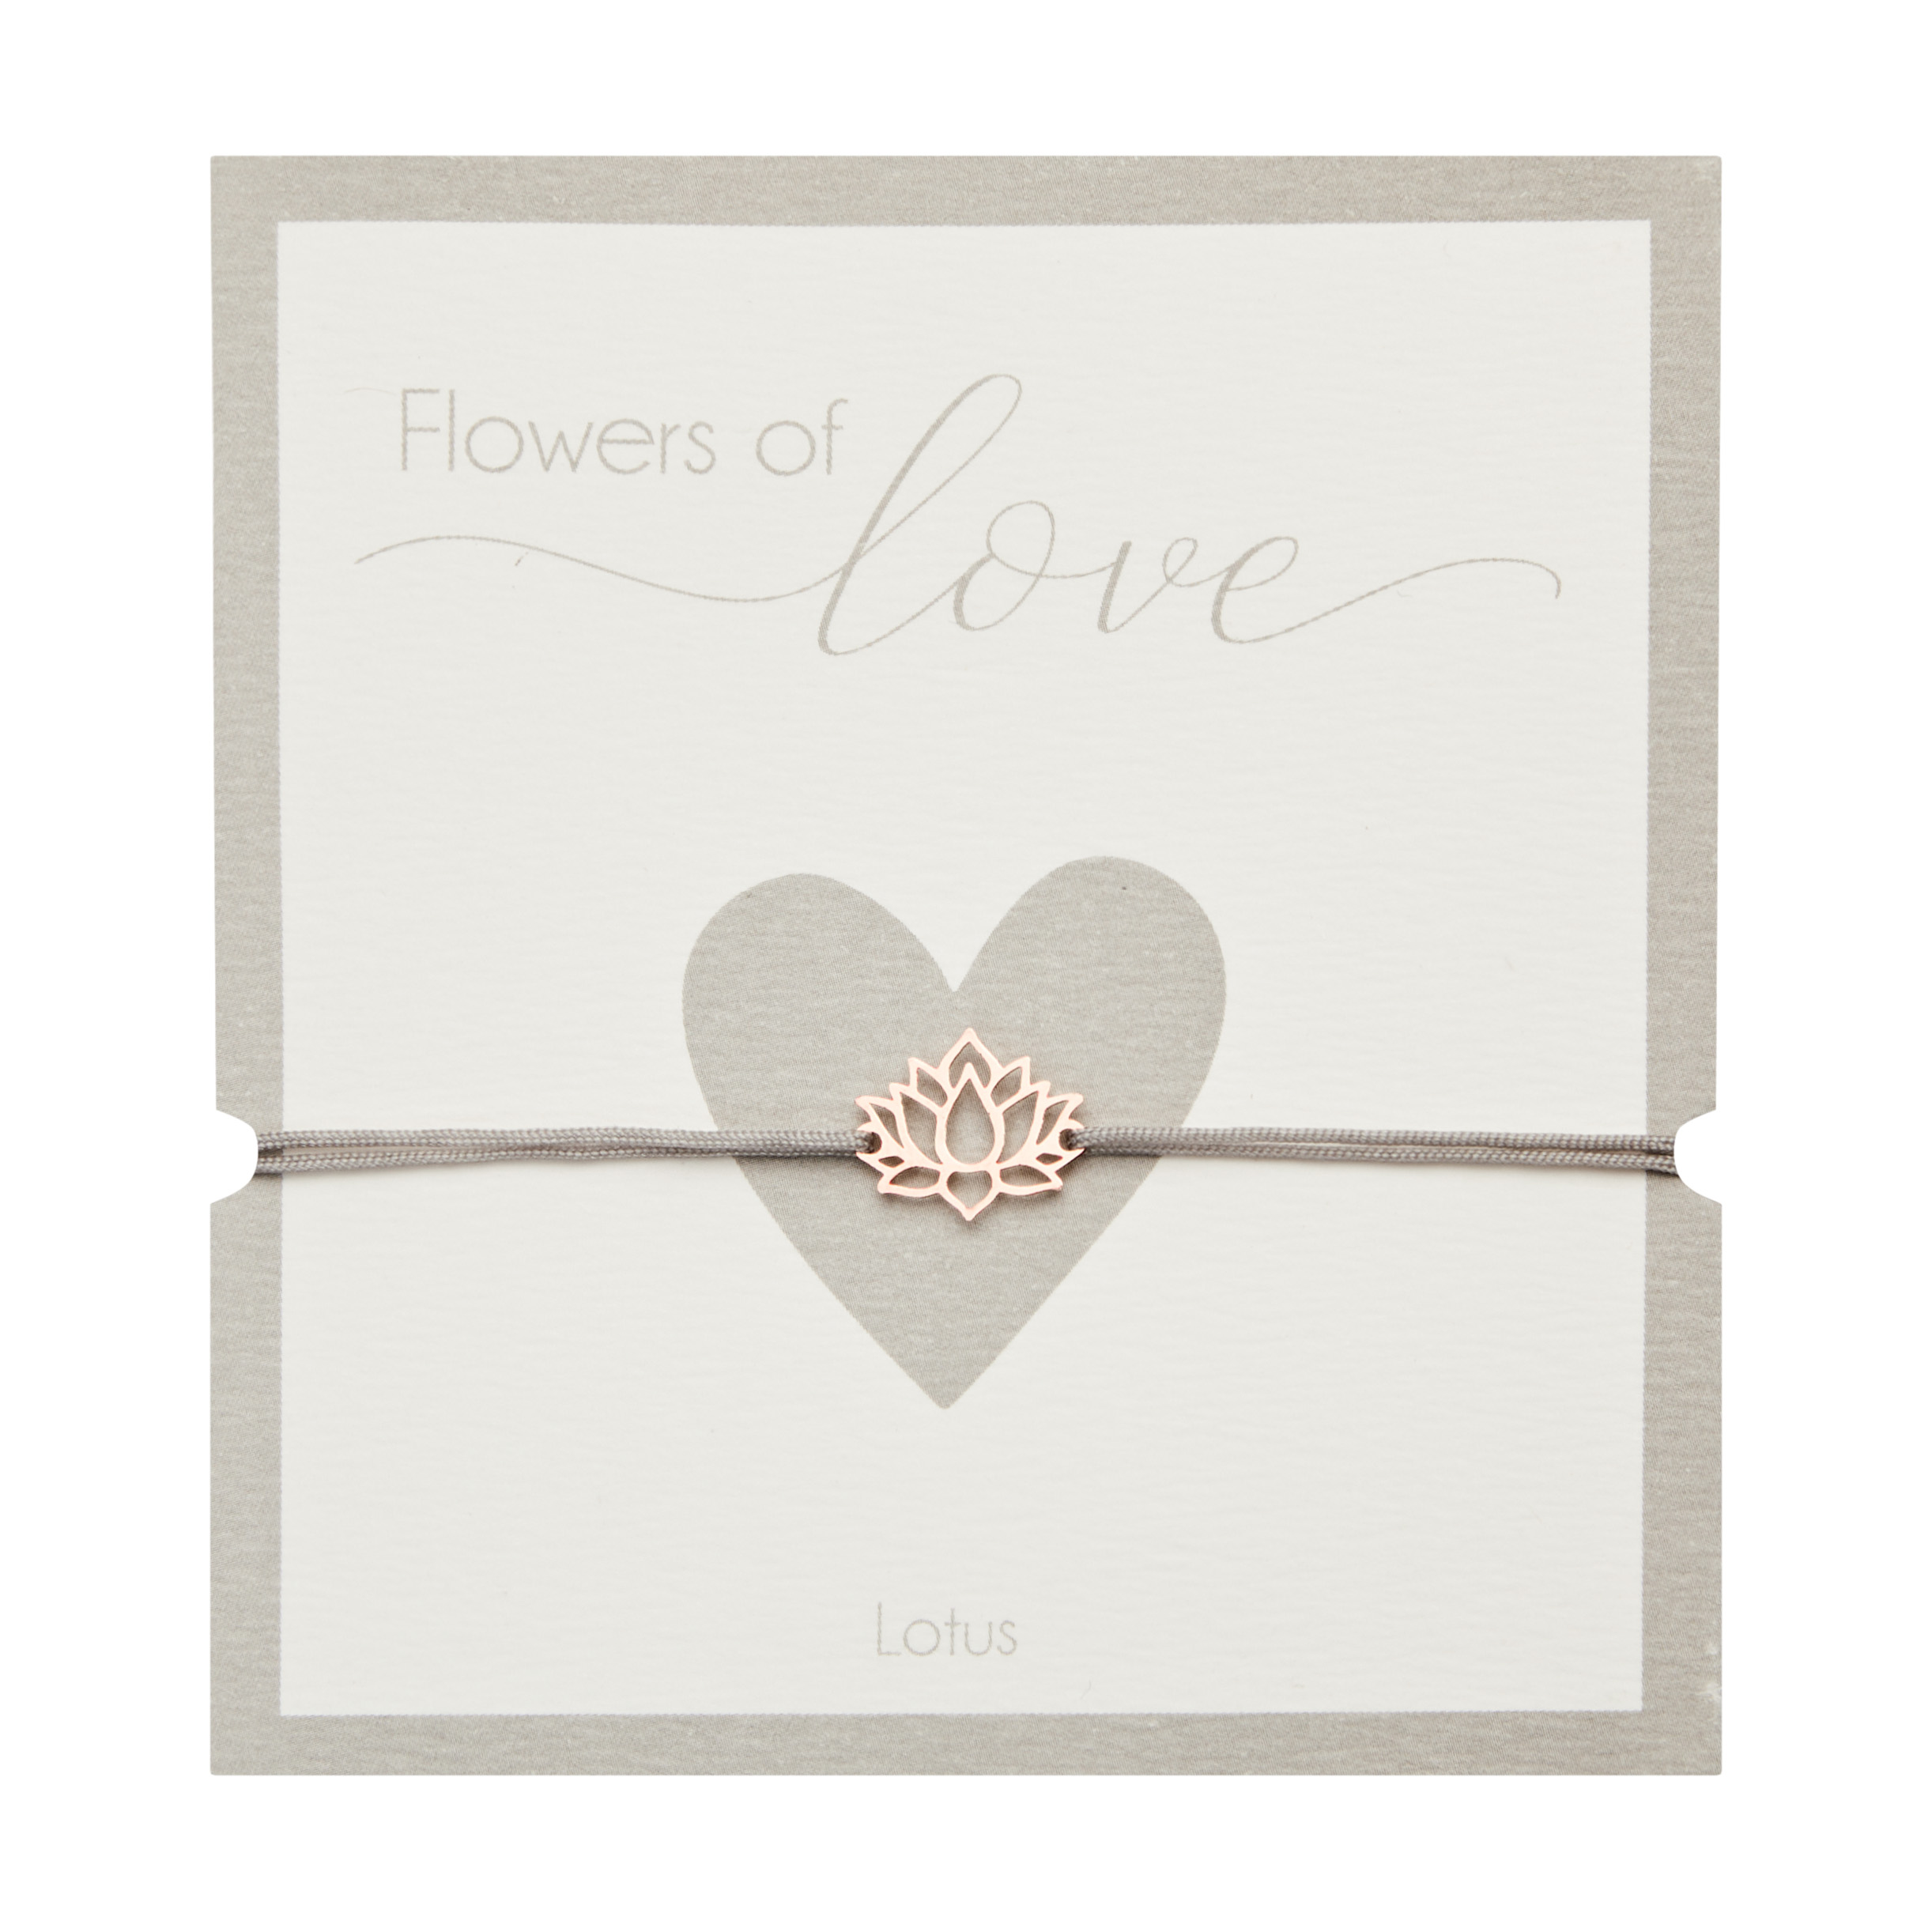 Armband - "Flowers of love" - rosévergoldet - Lotus